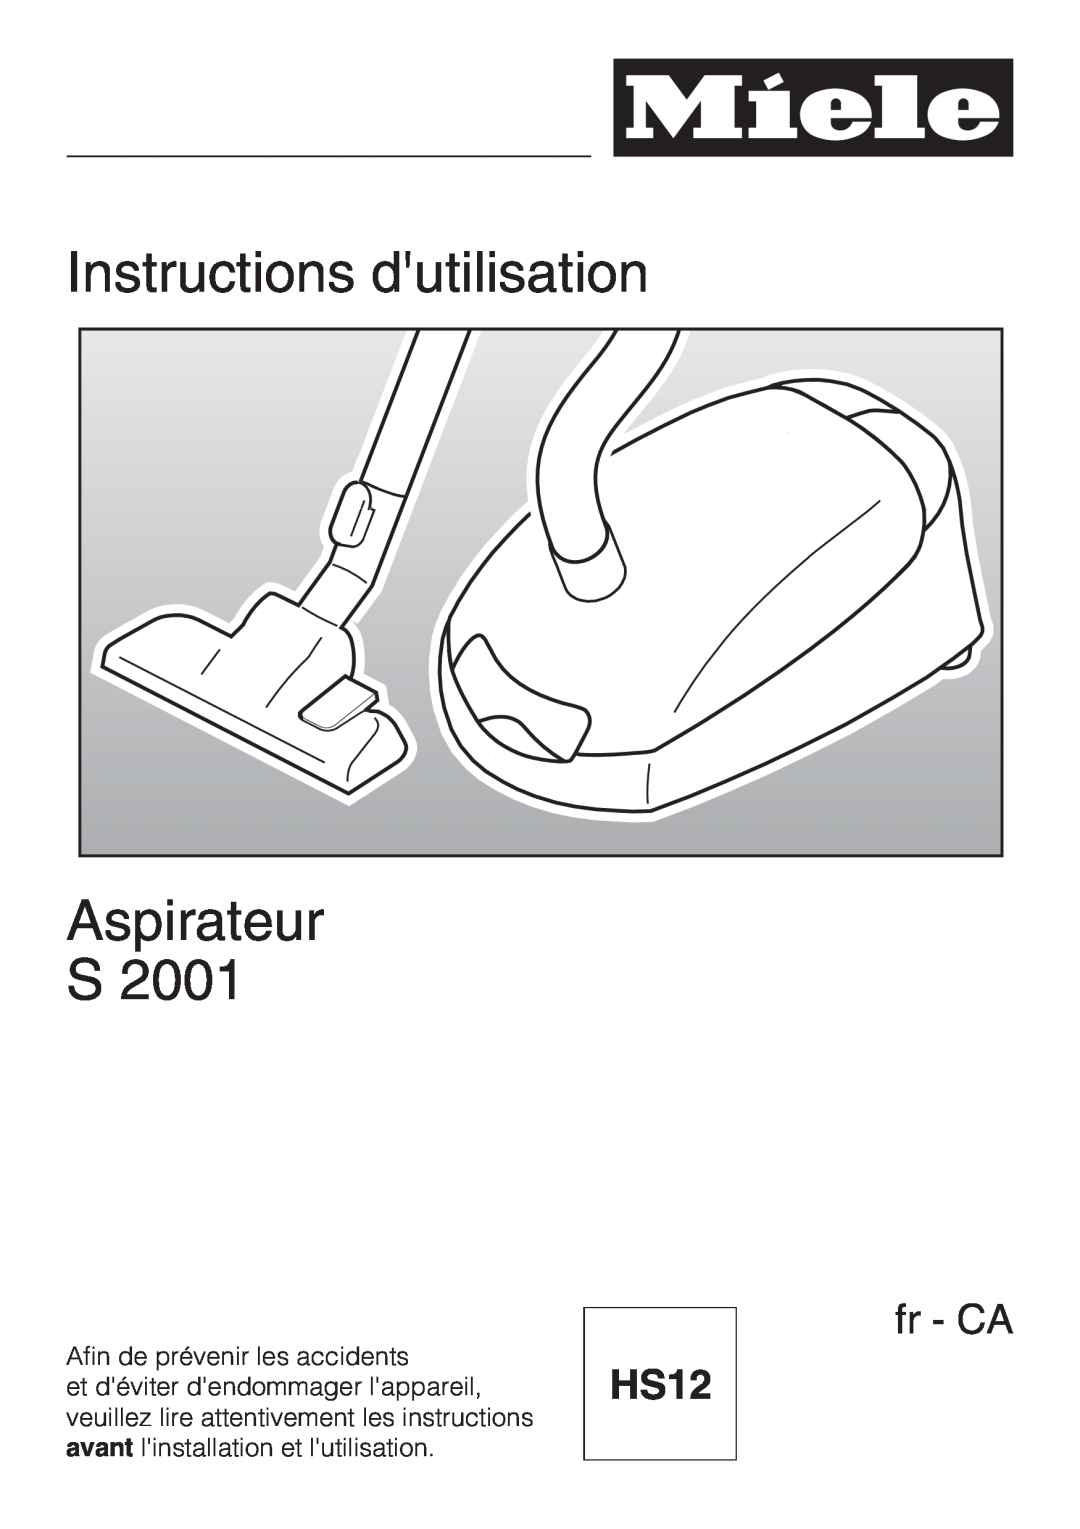 Miele S 2001 manual Instructions dutilisation, Aspirateur, HS12, fr - CA 